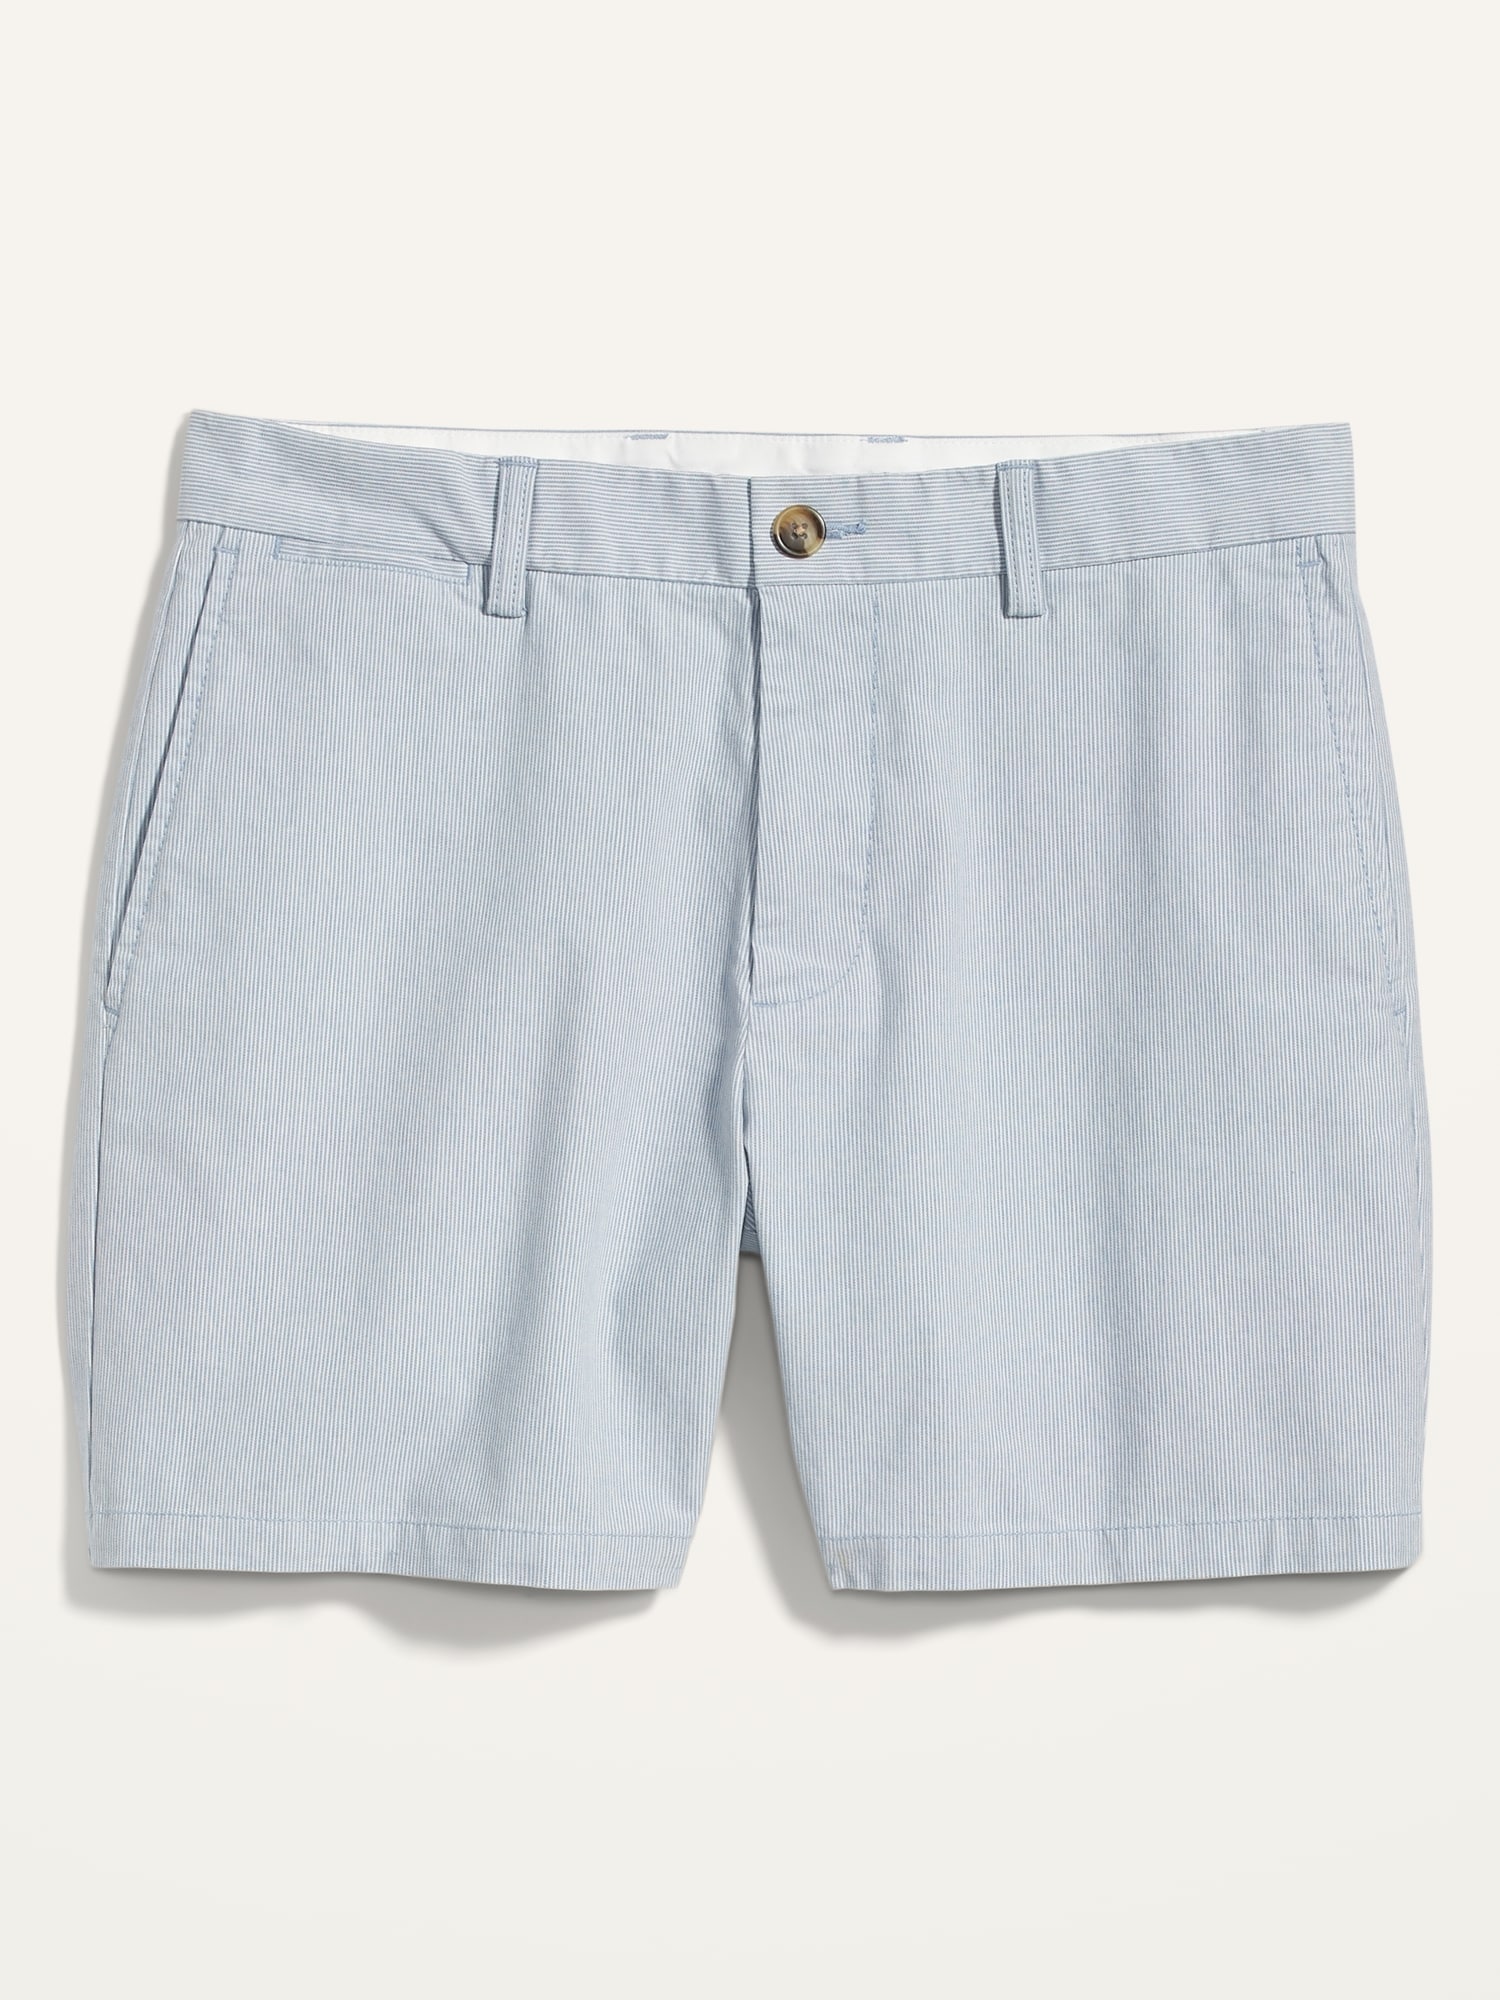 Slim Micro-Stripe Ultimate Chino Shorts -- 6-inch inseam